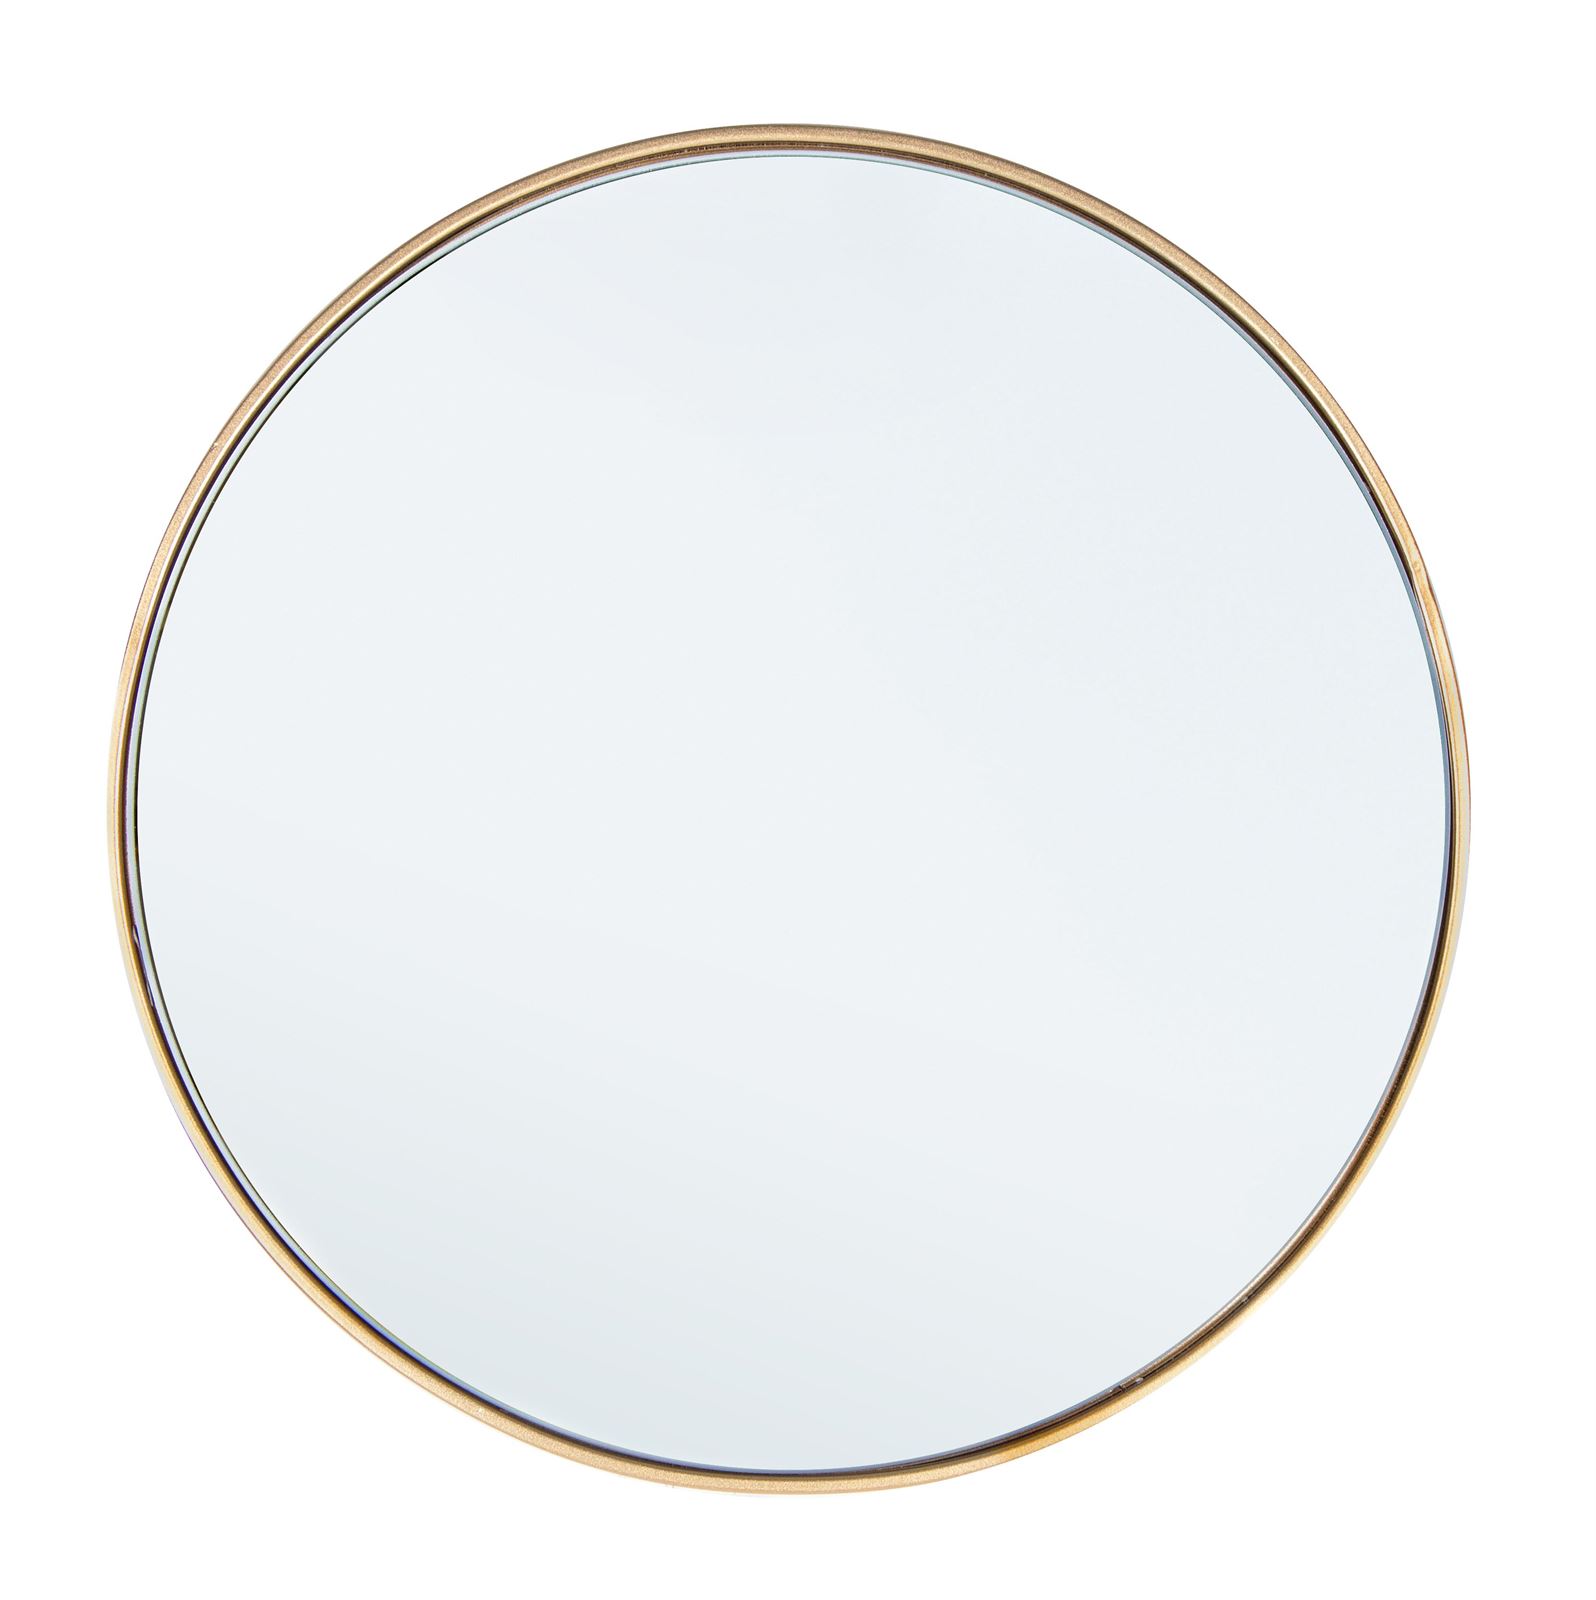 Espejo redondo dorado - Imagen 1